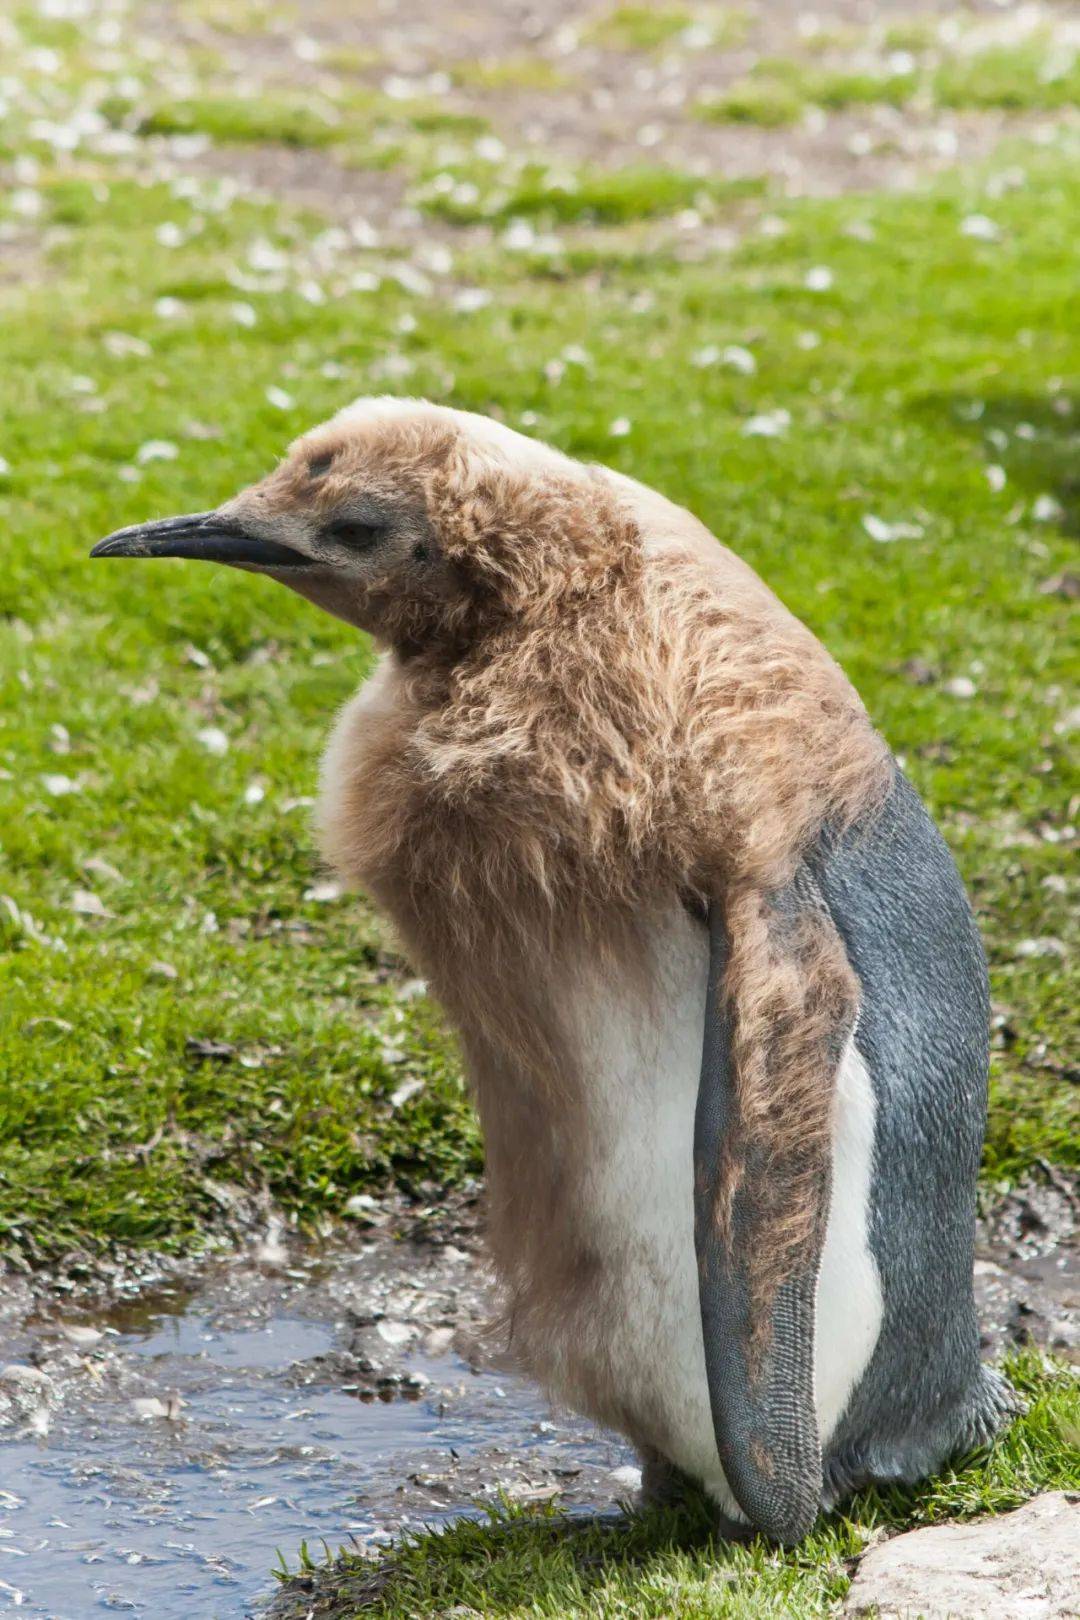 原创王企鹅宝宝像猕猴桃一样可爱但进入脱毛期之后样子就变尴尬了